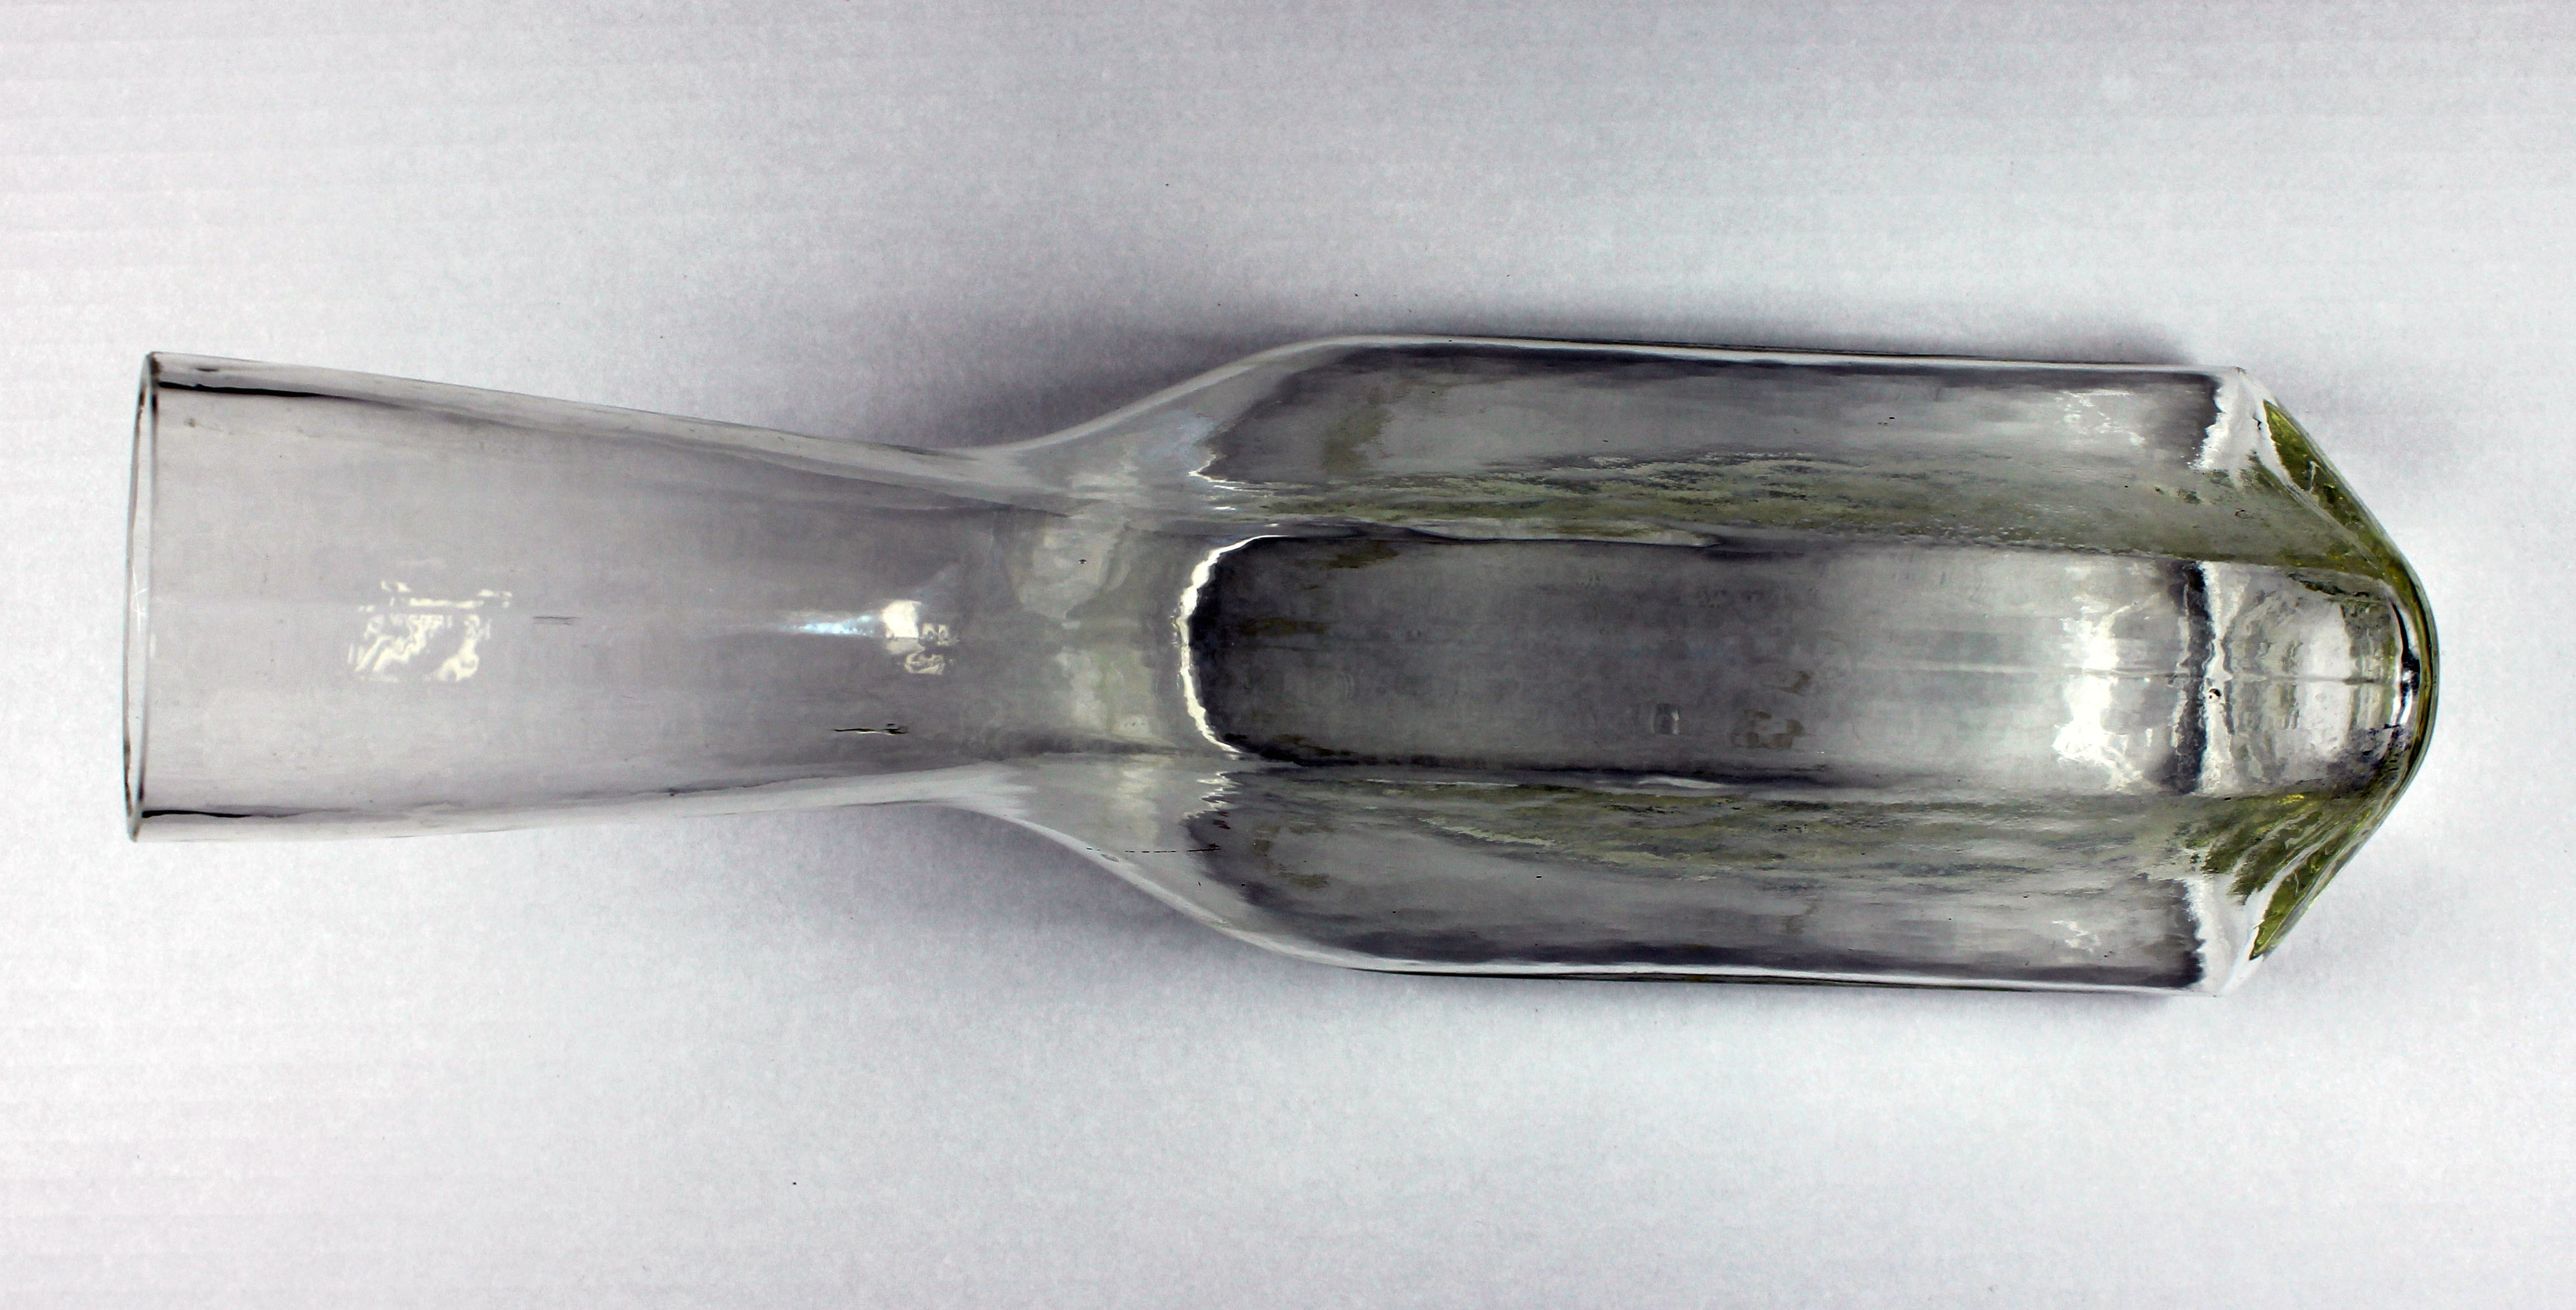 Urinflasche (Ente) aus Glas (Museum Wolmirstedt RR-F)